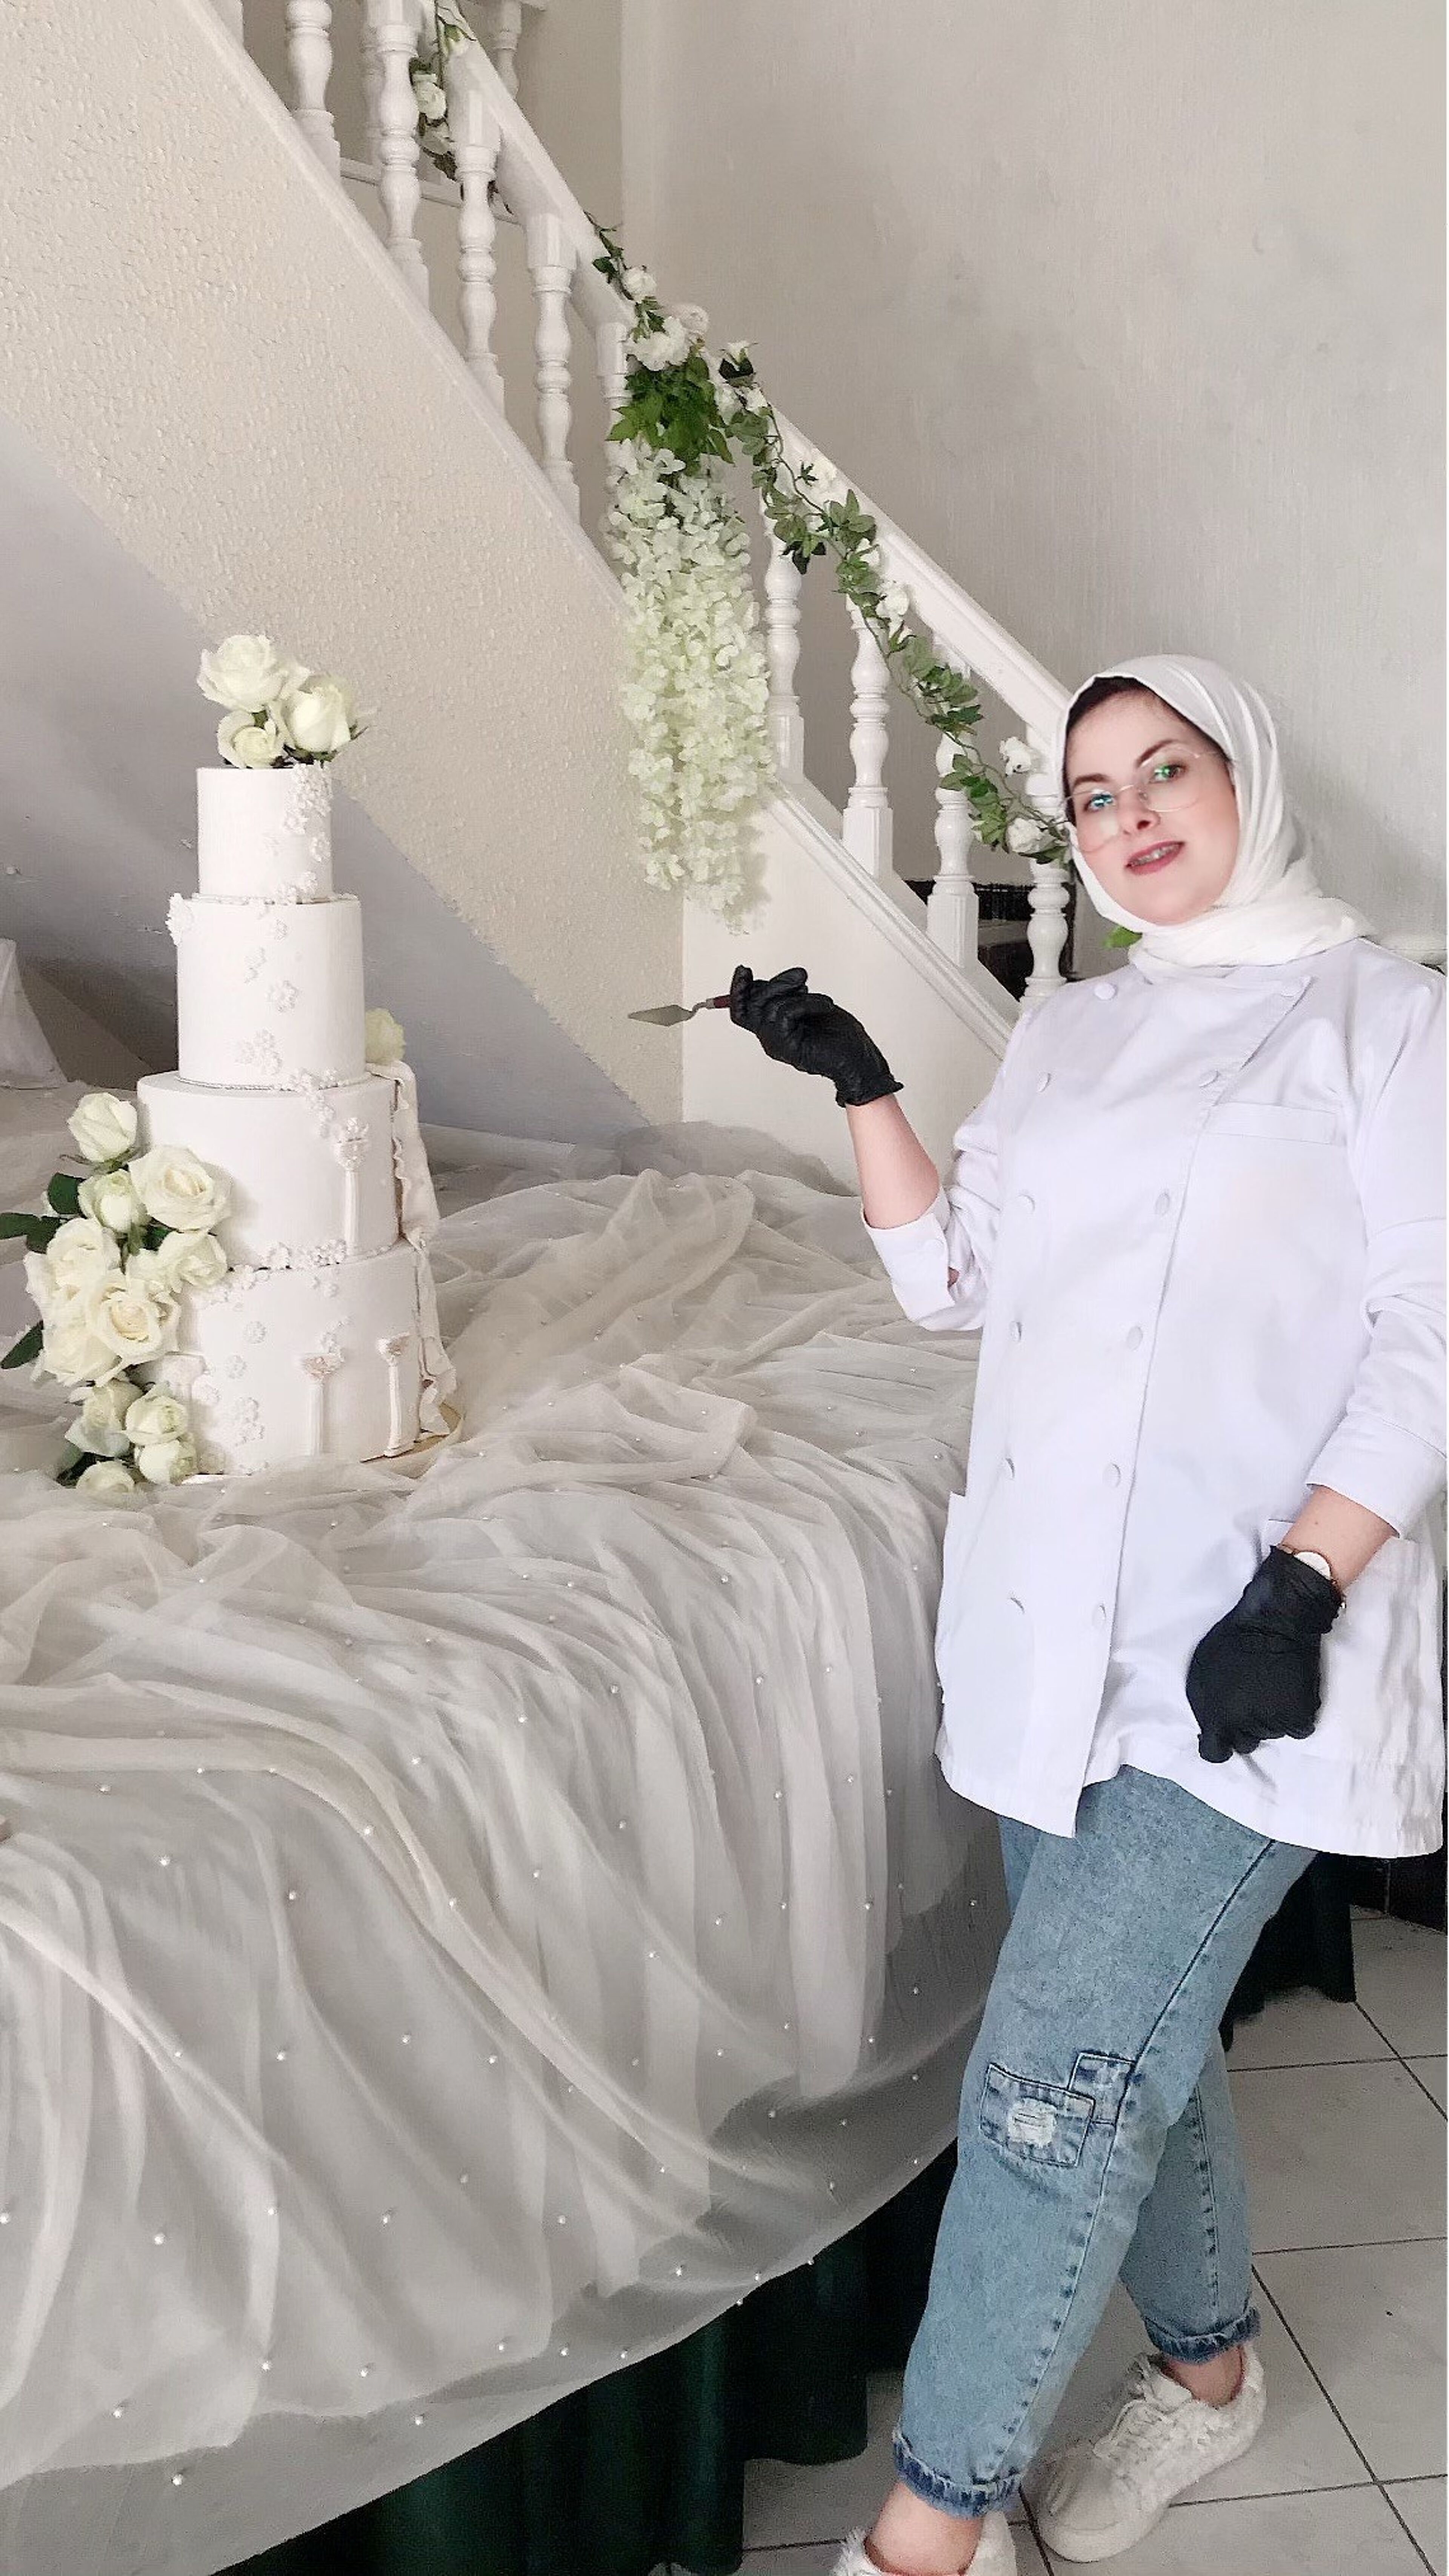 Un chef pâtissier en uniforme blanc et hijab, tenant une spatule, se tient fièrement à côté d'un gâteau de mariage à plusieurs étages orné de roses blanches.